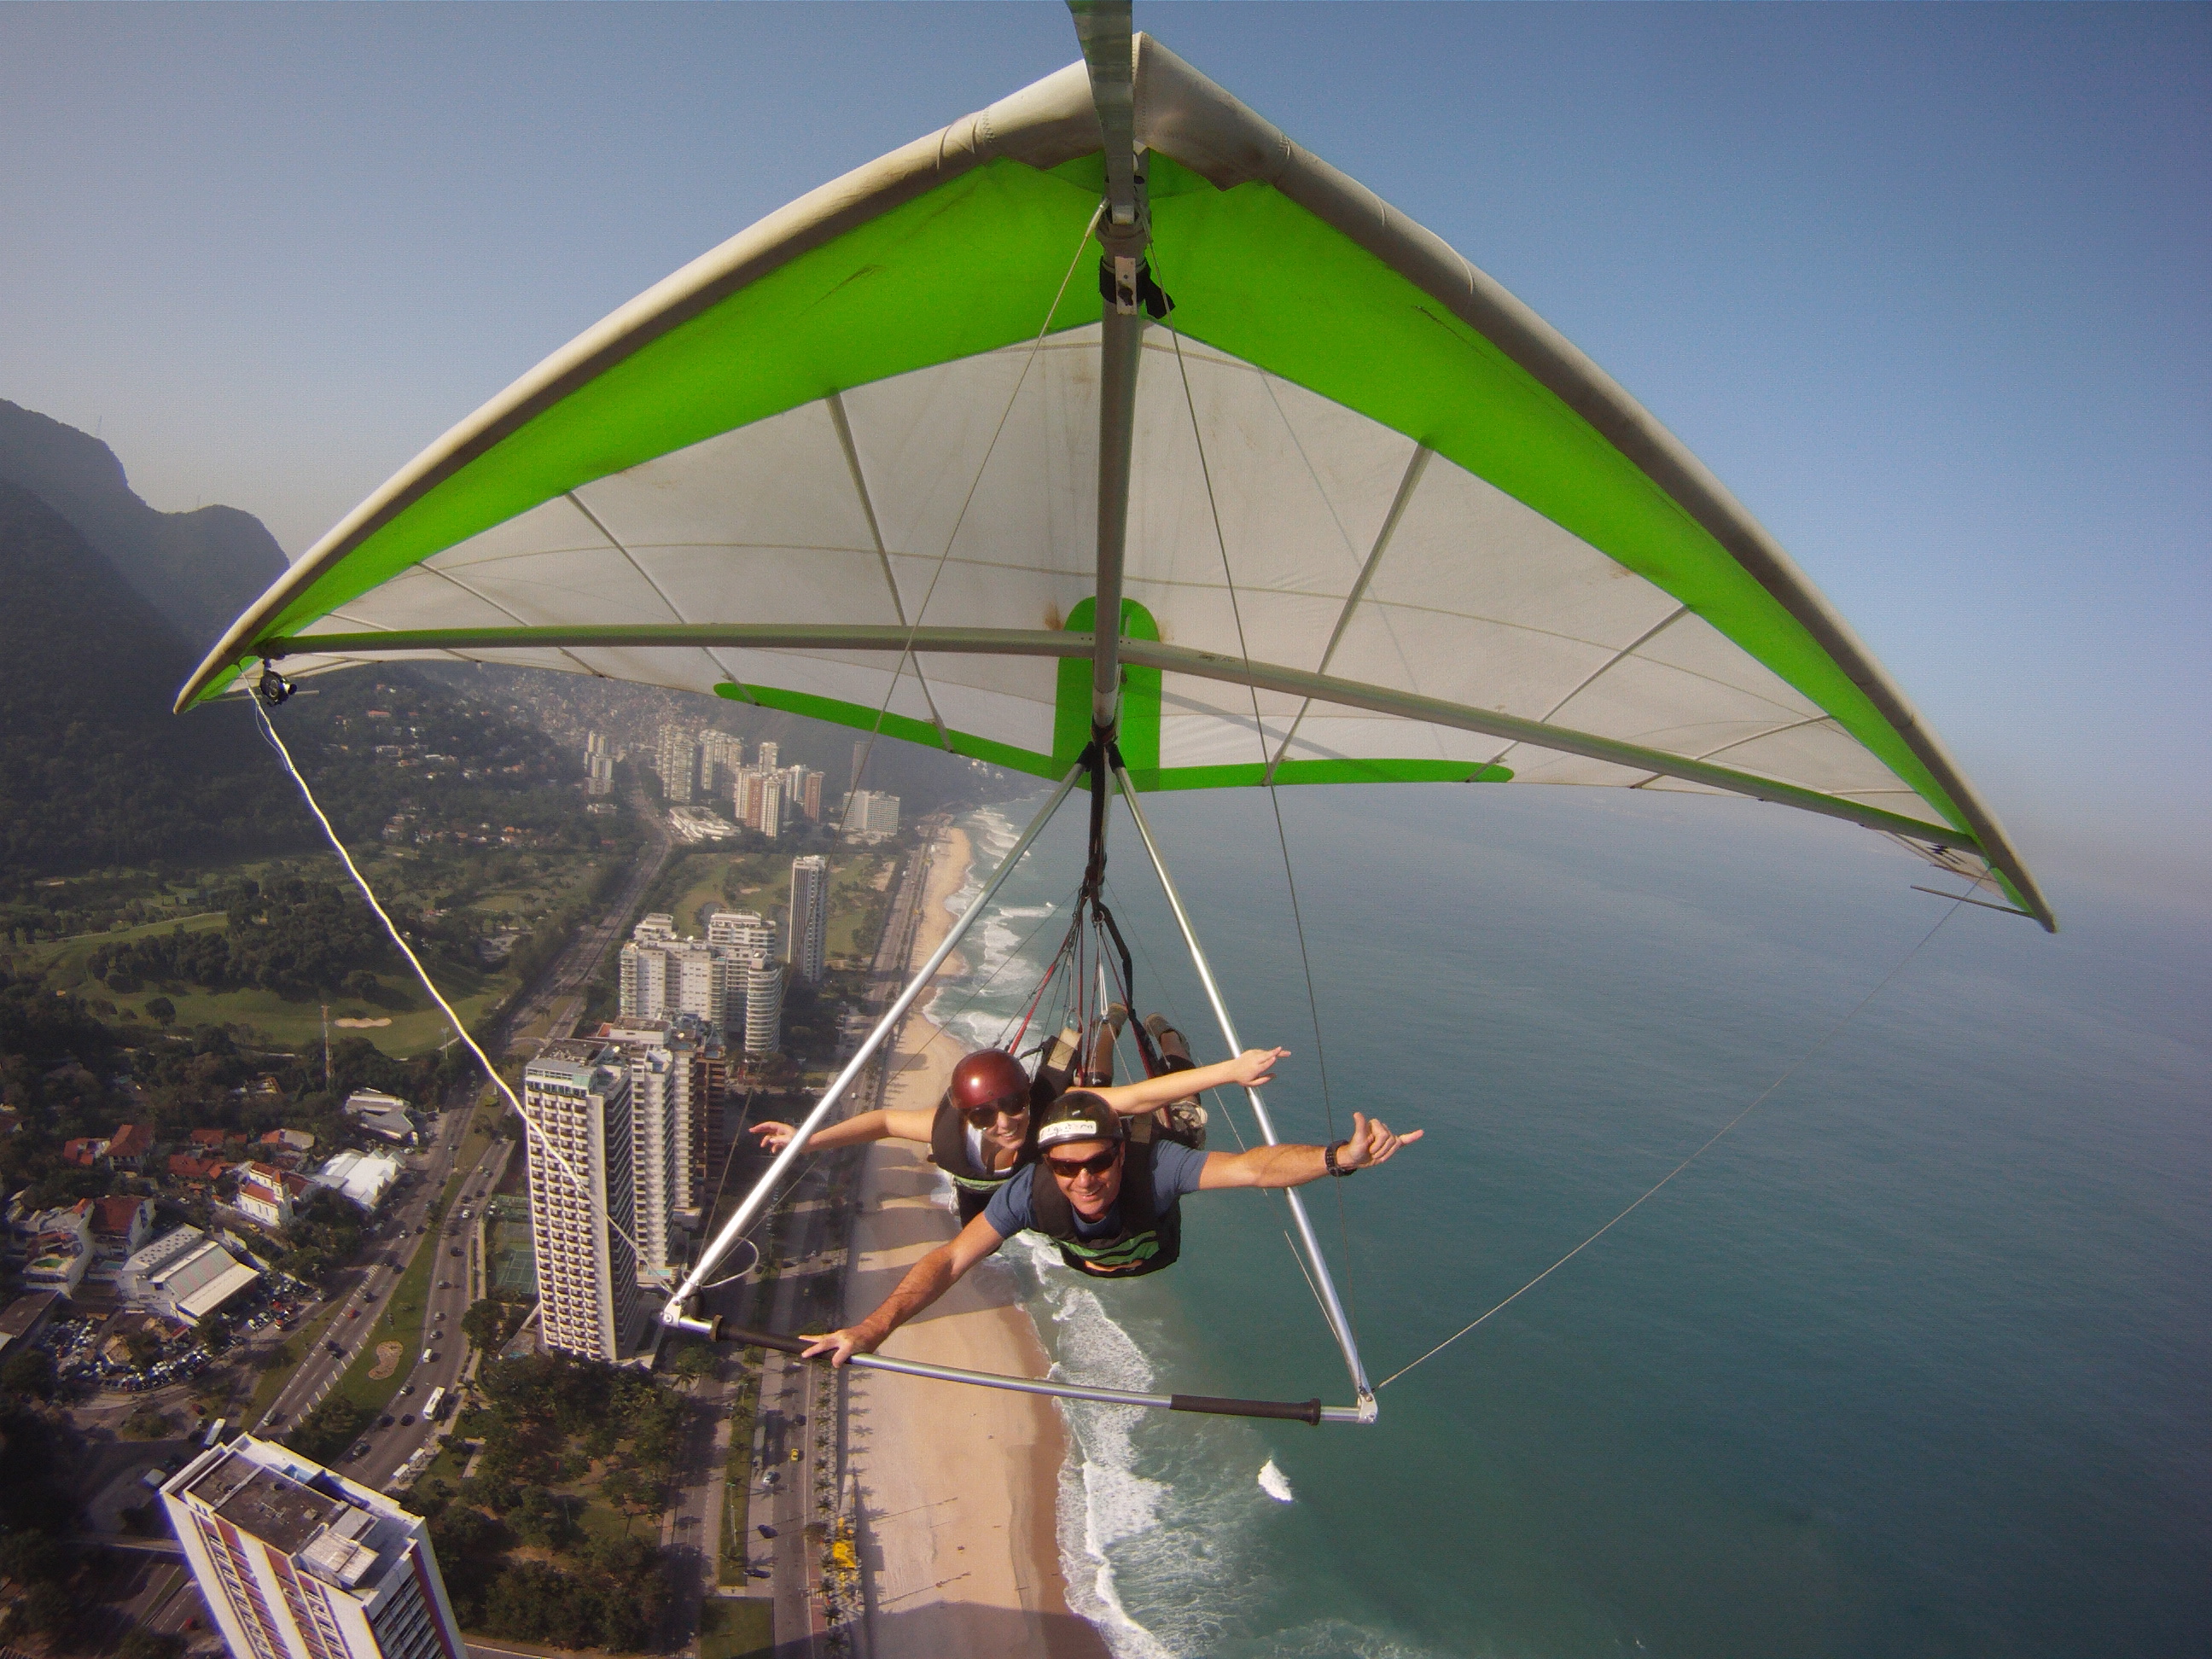 Rio_Hang_Gliding_over_the_beach.jpg